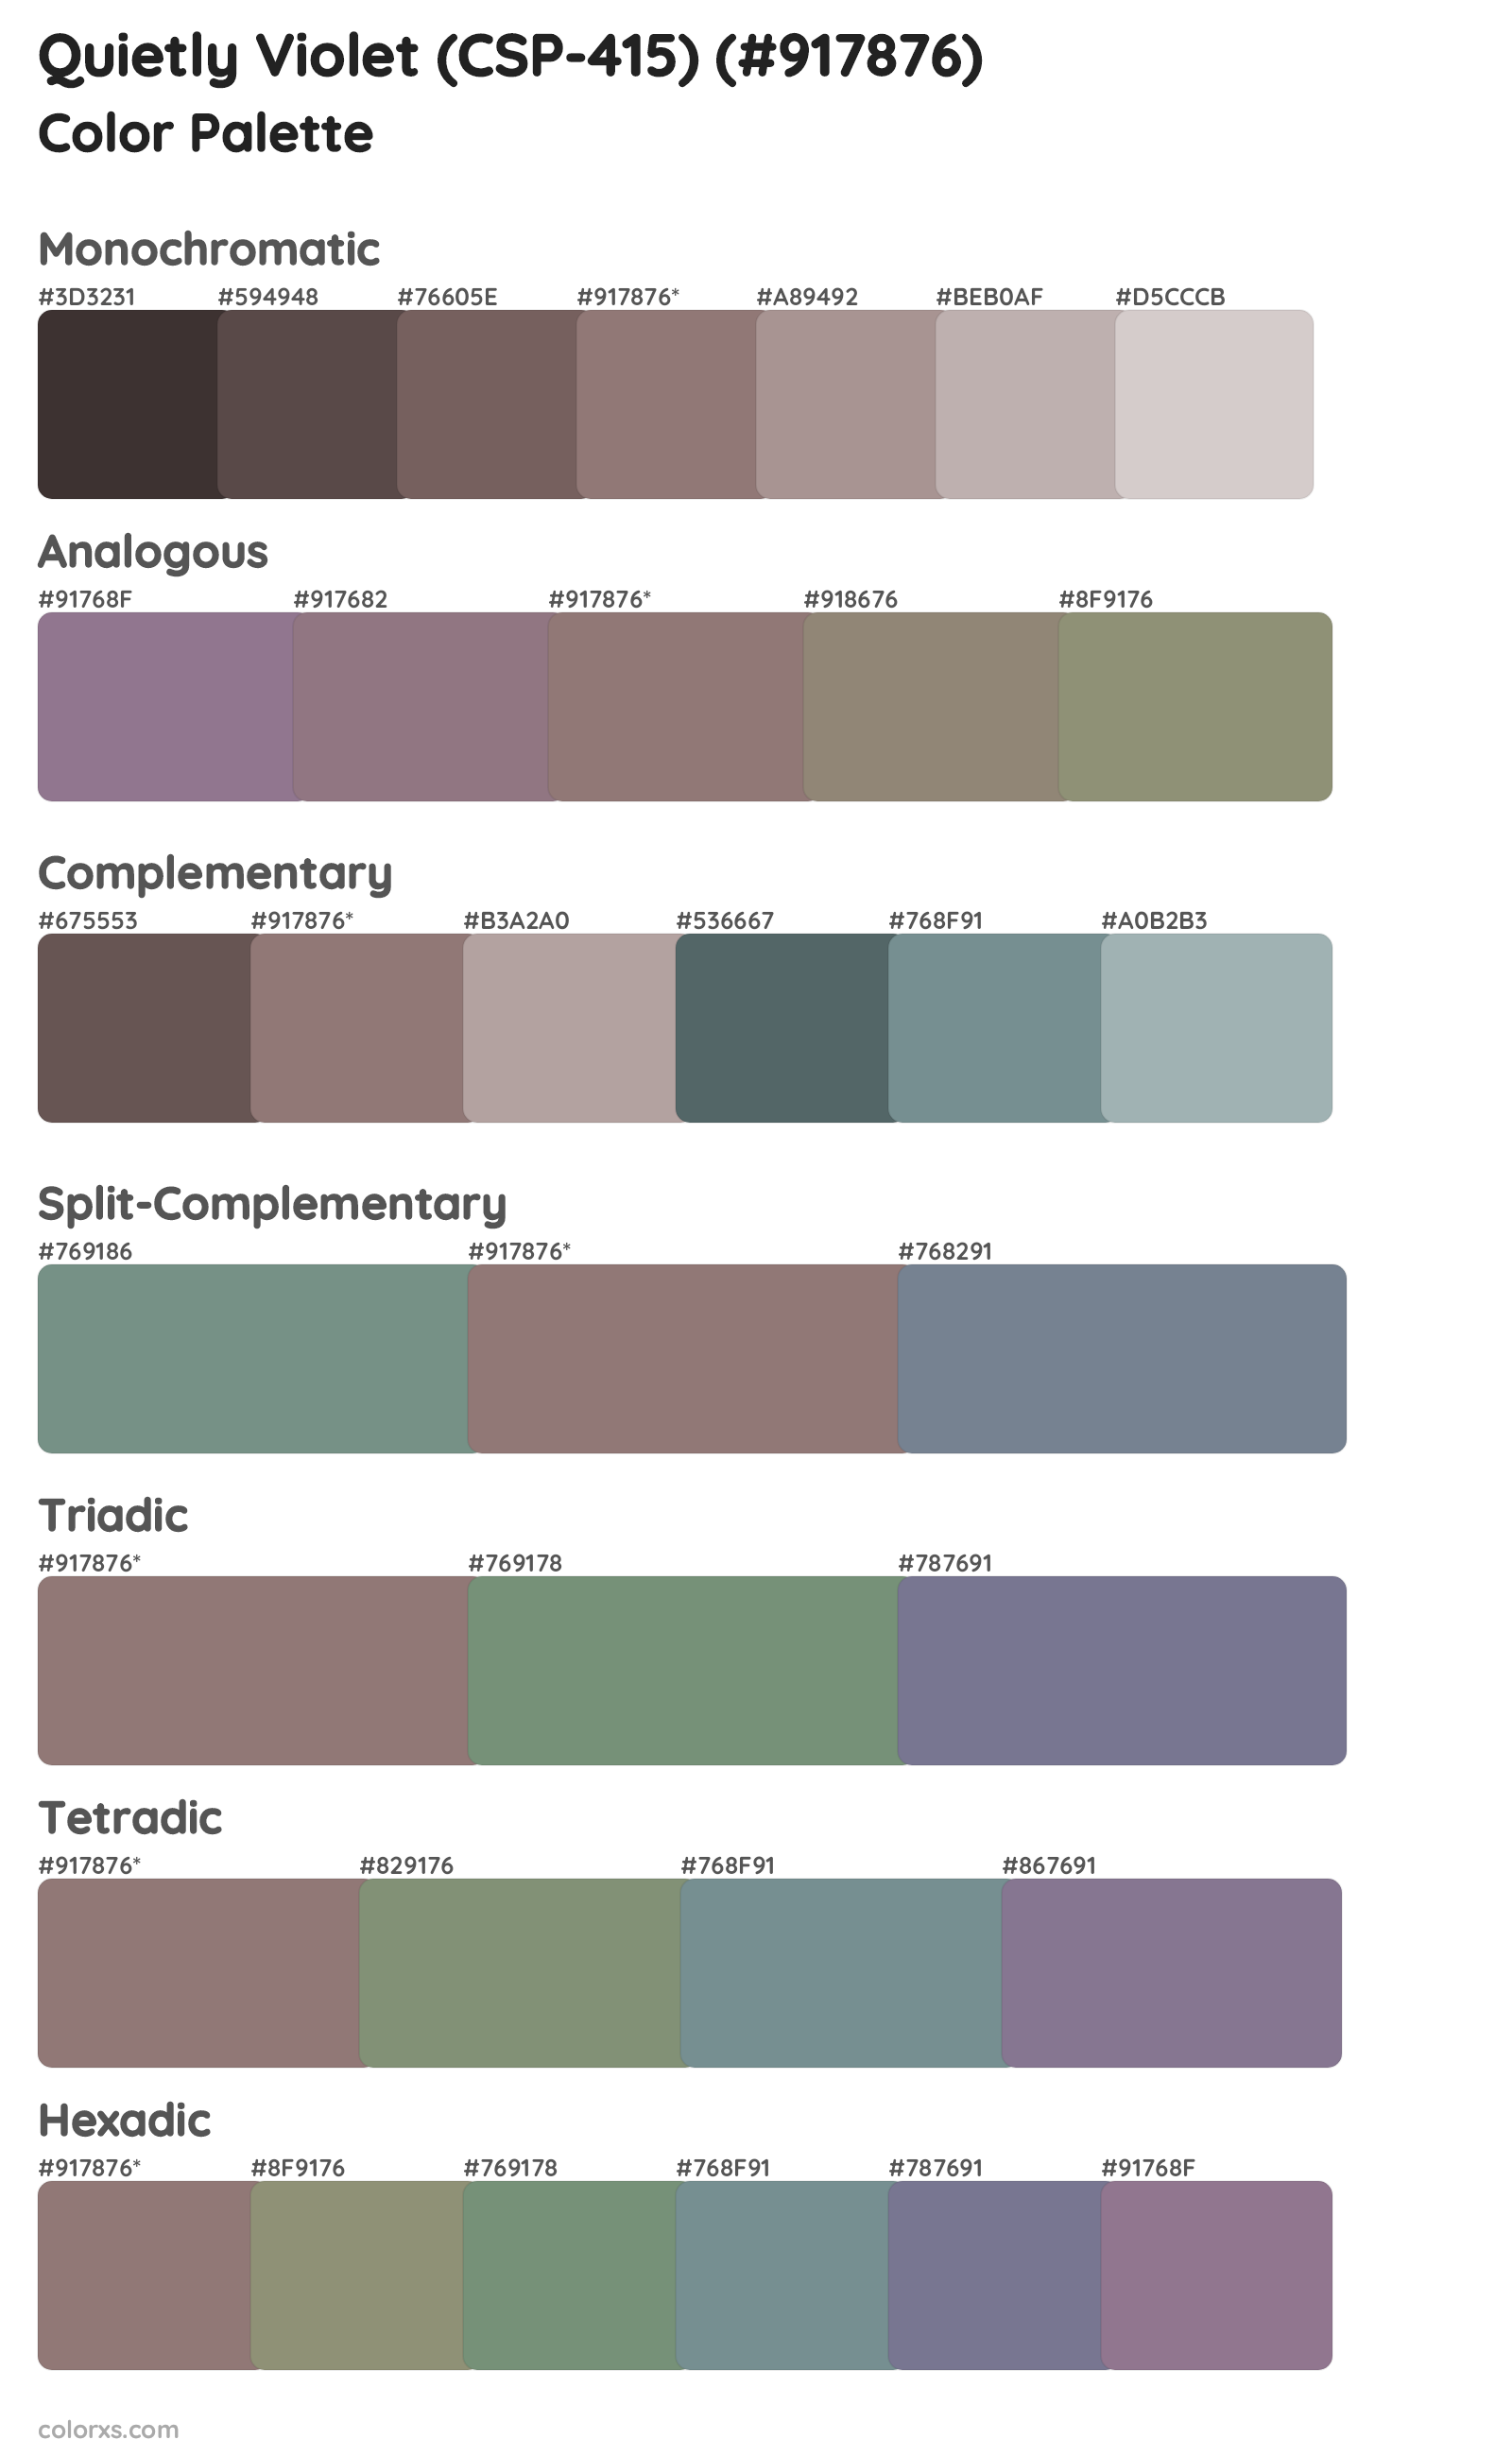 Quietly Violet (CSP-415) Color Scheme Palettes